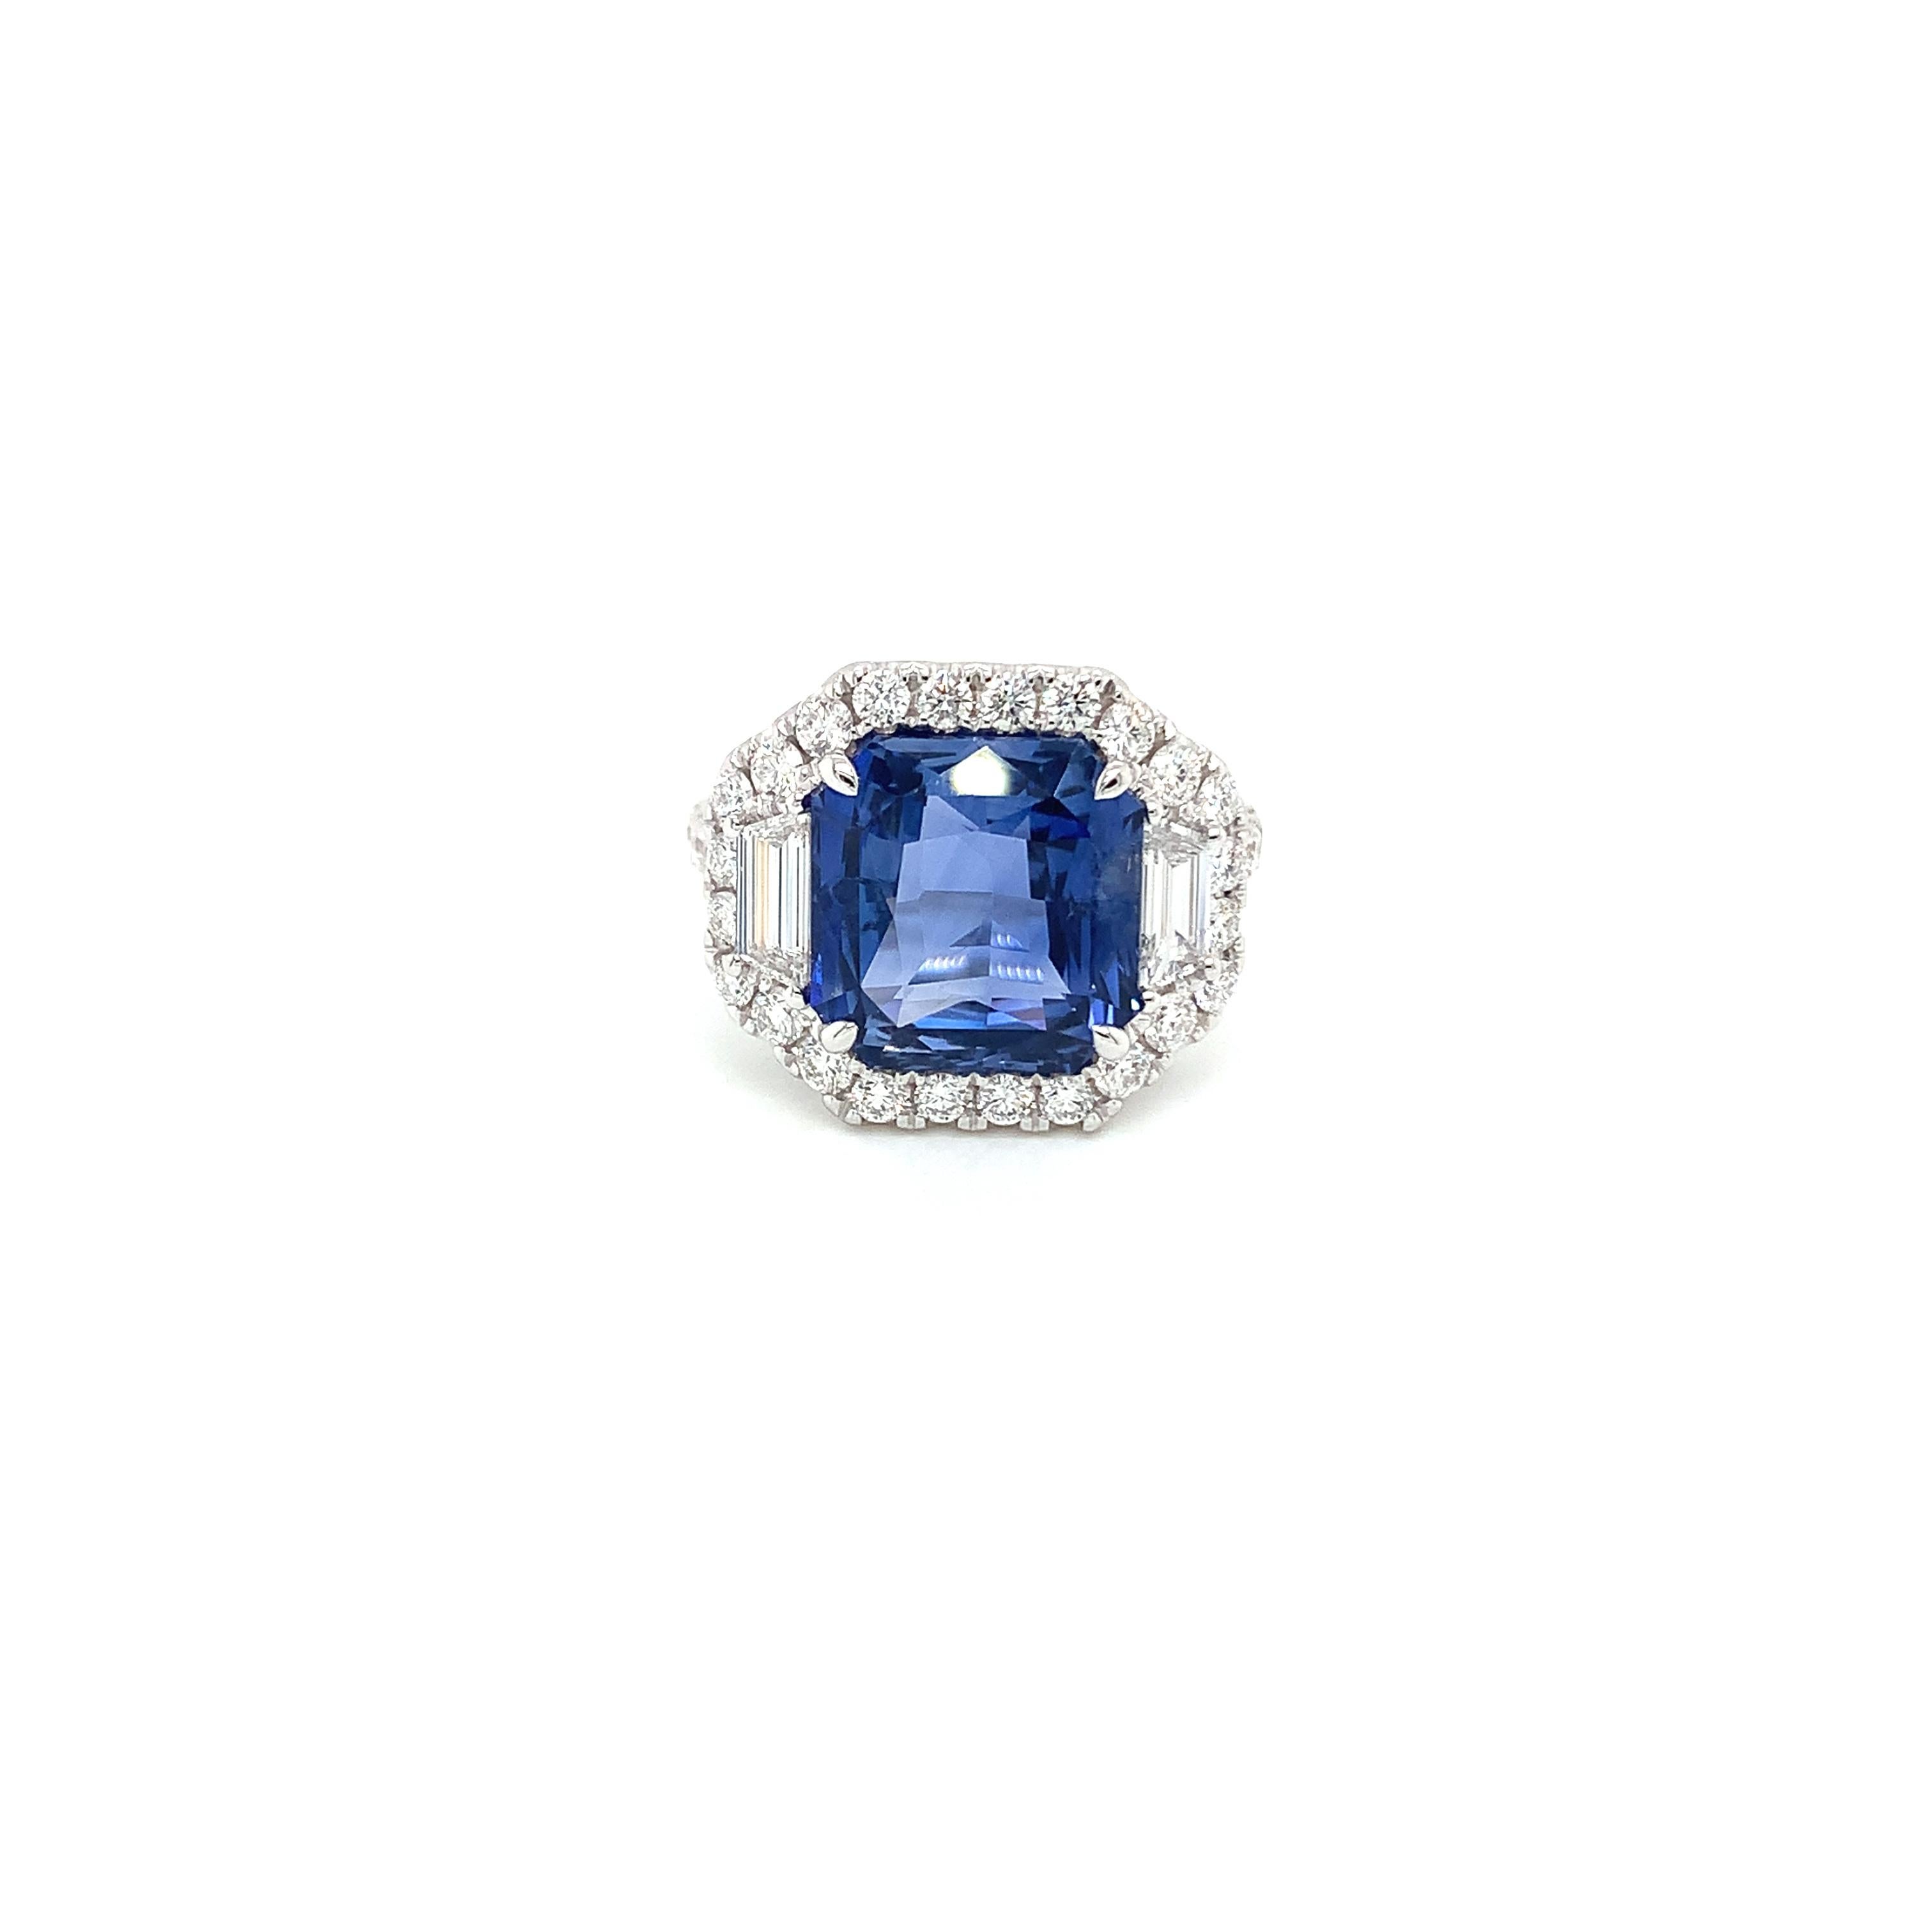 Blauer Smaragdschliff-Saphir mit einem Gewicht von 7,96 Karat
Messung (10,8x10,6) mm
34 runde Diamanten mit einem Gewicht von 0,88 Karat.
Zwei trapezförmige Diamanten mit einem Gewicht von 0,38 Karat
Messung (6,02x2,37) mm
Ring aus 18 Karat